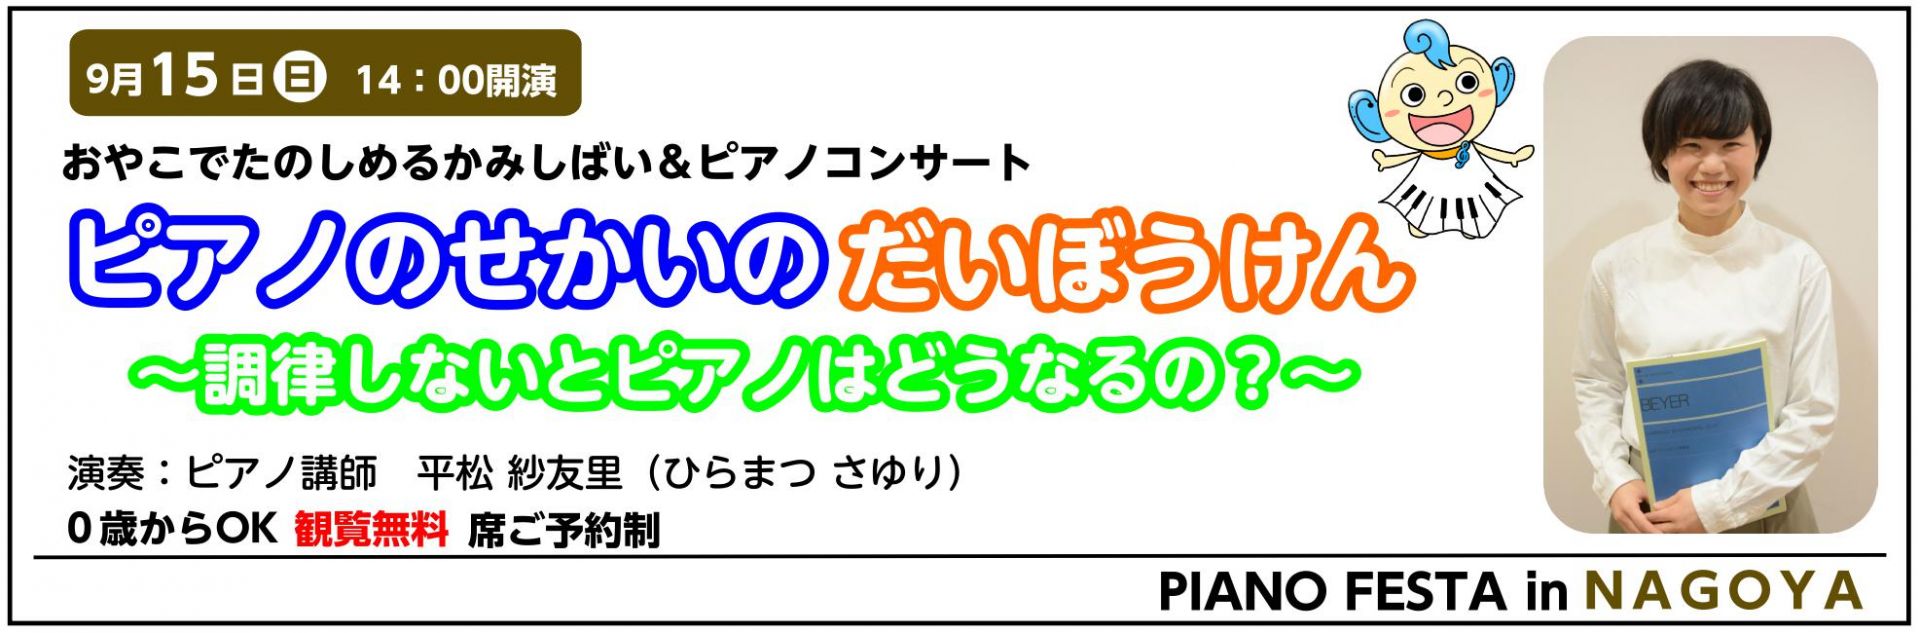 9/15（日） 紙芝居&ピアノコンサート ピアノのせかいのだいぼうけん 【PIANO FESTA 2019 in NAGOYA】